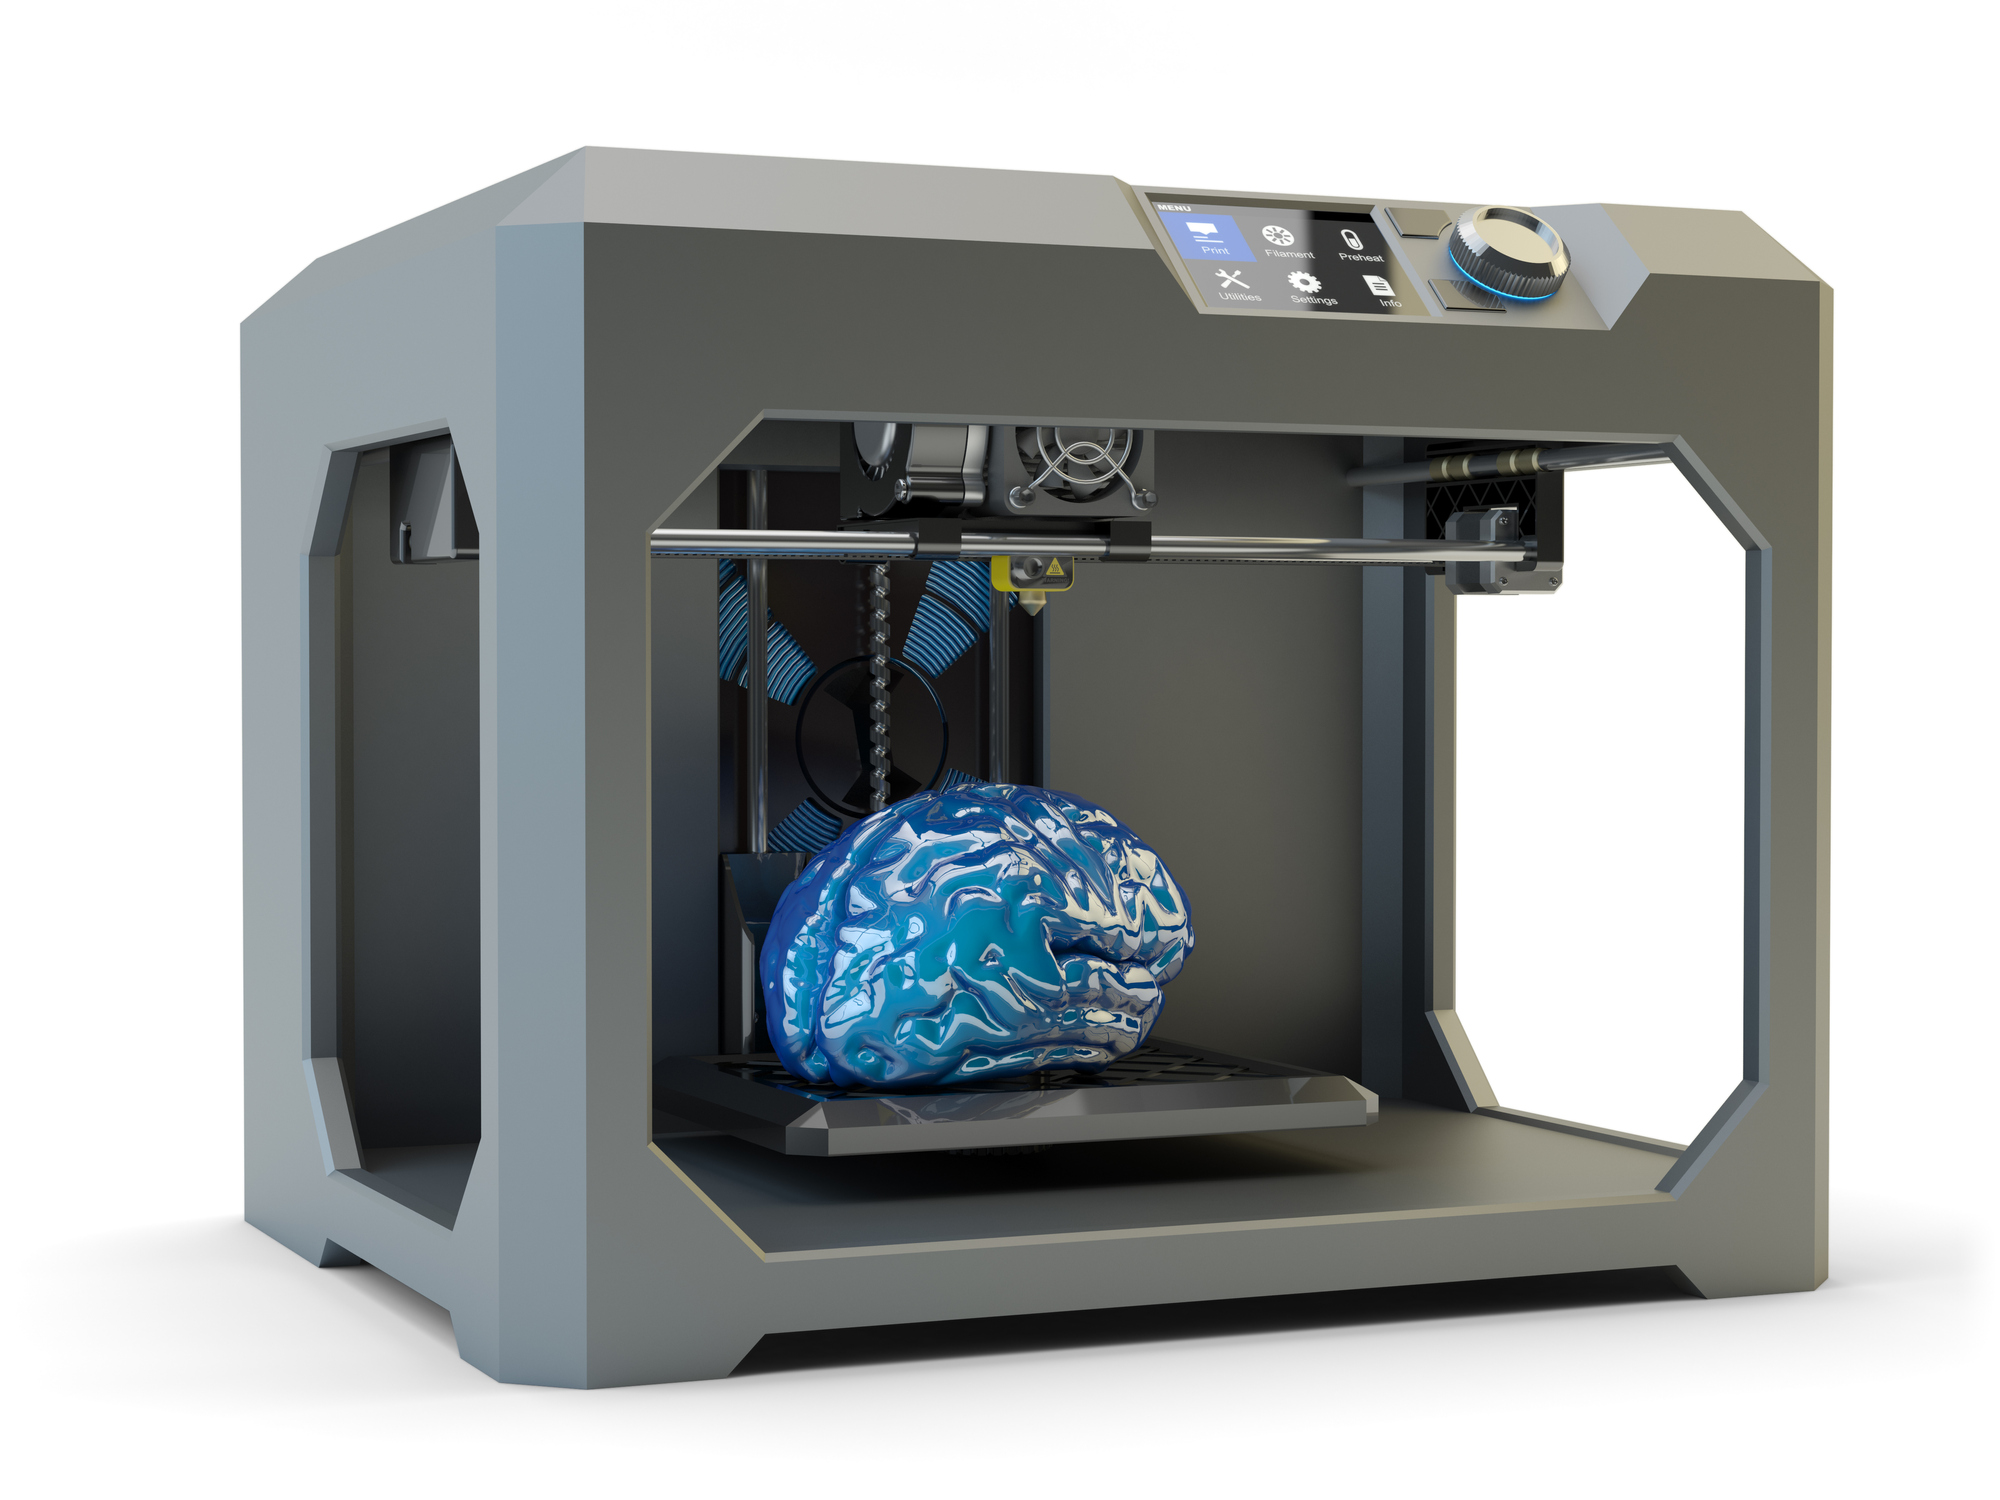 Ombord Saucer Rose 3D gennembrud: Nu kan alle printe en interaktiv model af hjernen – Dit  Hedensted